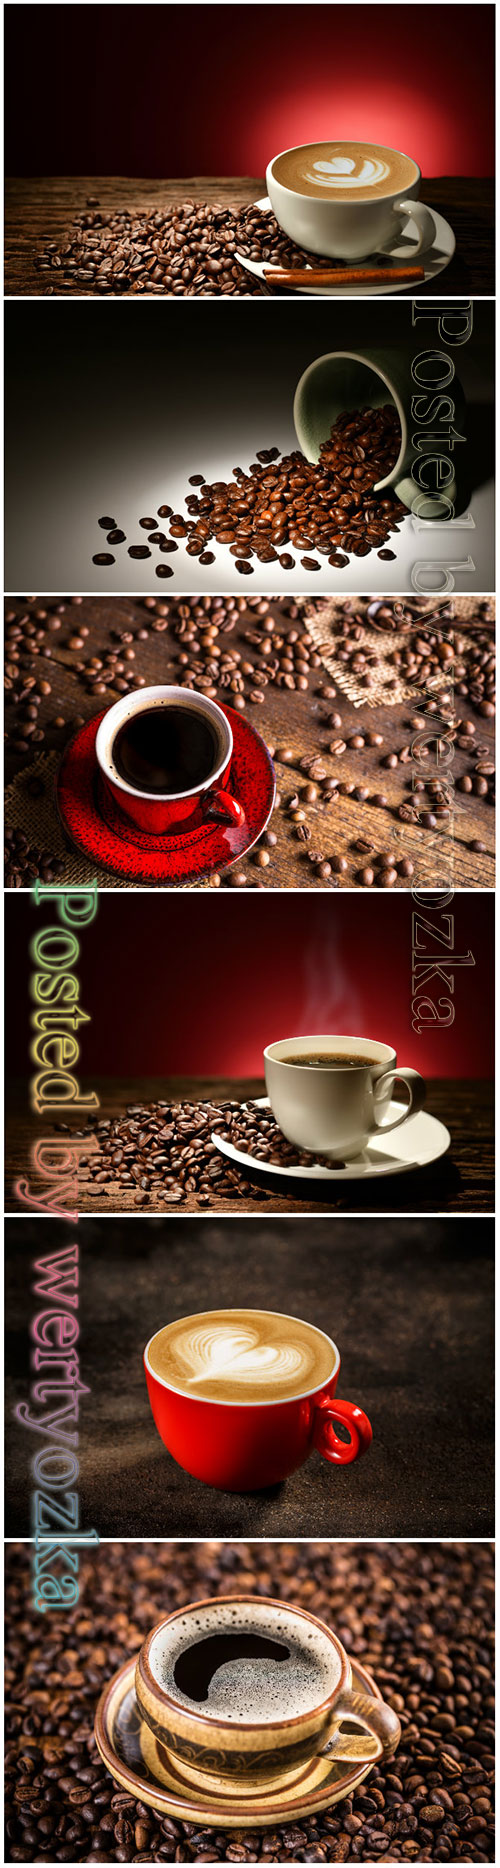 Coffee beautiful stock photo